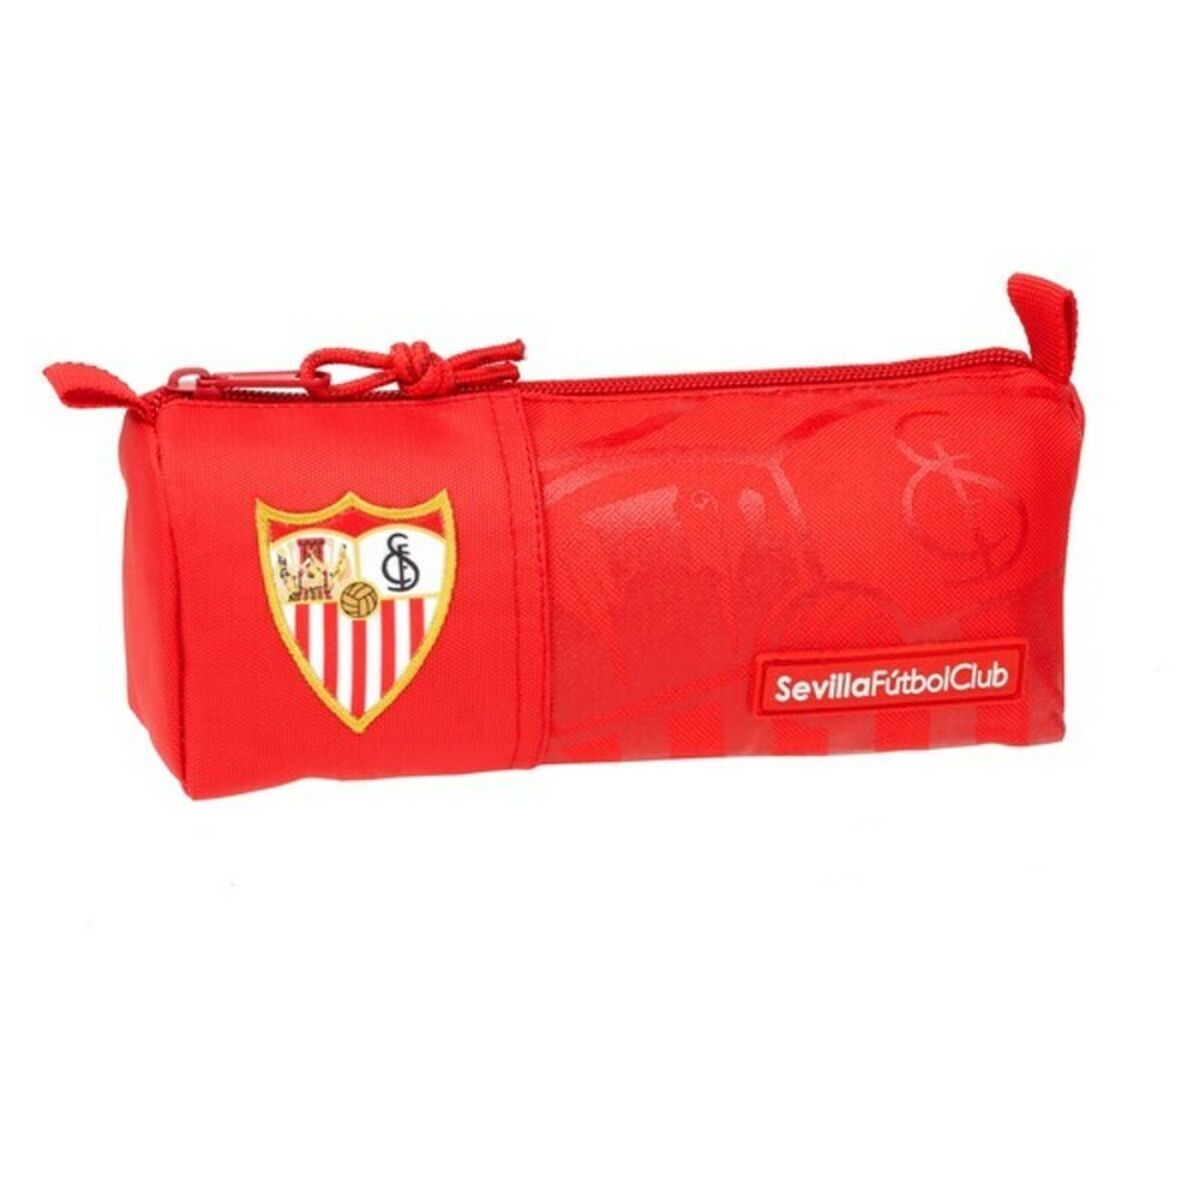 Bag Sevilla Fútbol Club 811956742 Röd 21 x 8 x 7 cm-Kontor och Kontorsmaterial, Skol- och utbildningsmaterial-Sevilla Fútbol Club-peaceofhome.se